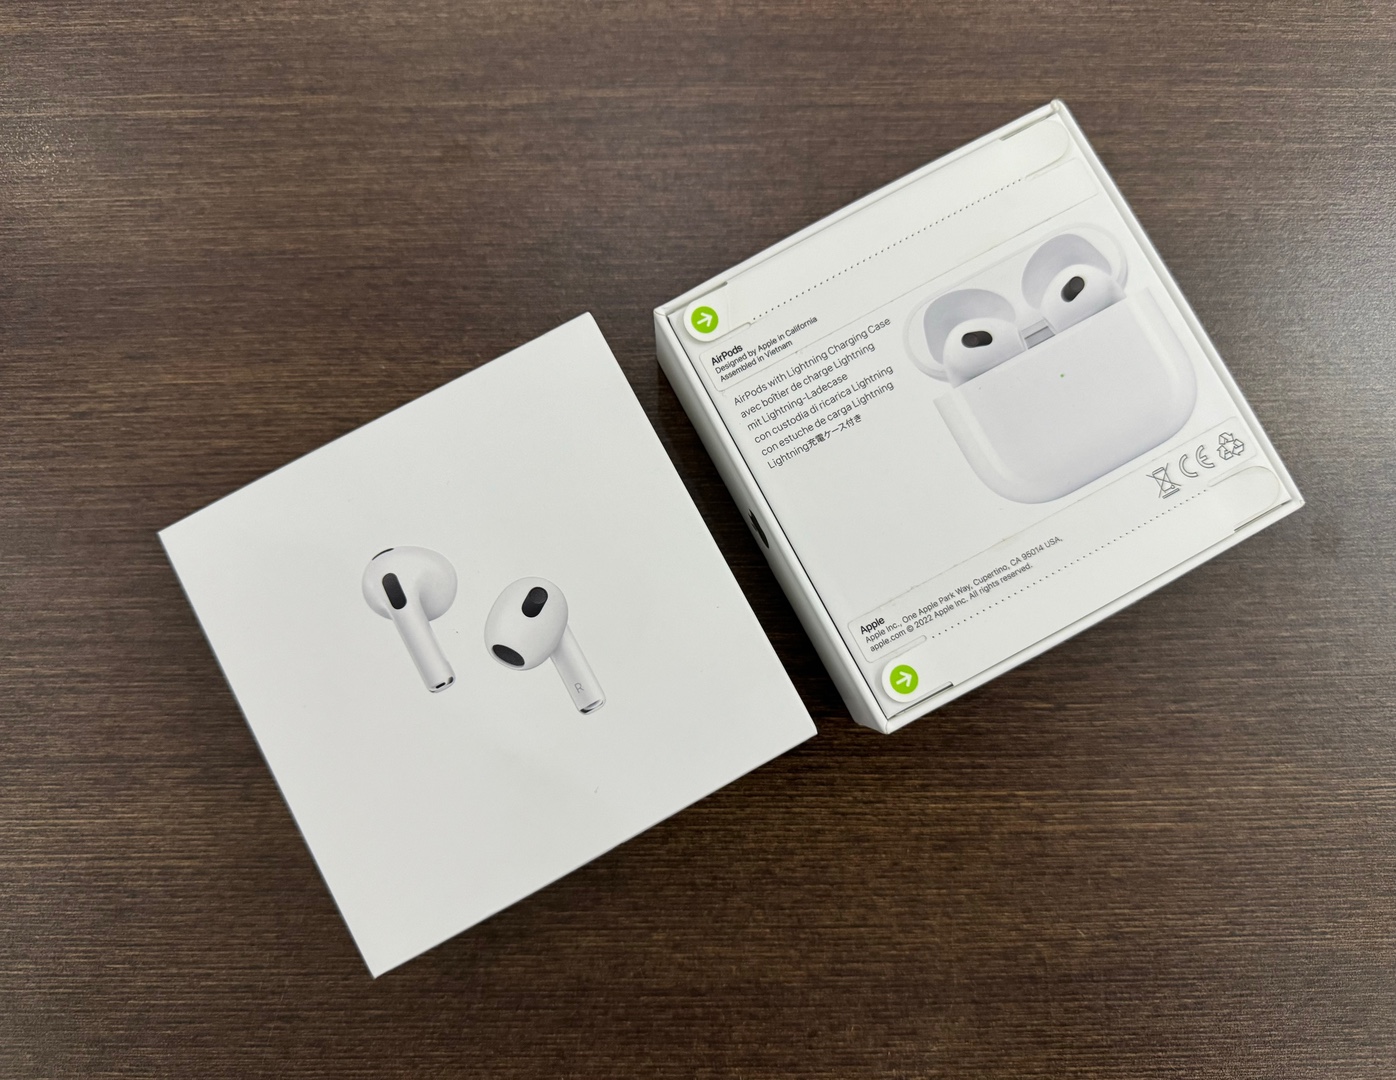 camaras y audio - Airpods Series 3 Nuevo Sellado by Apple, Originales RD$ 9.750 NEG| Física.